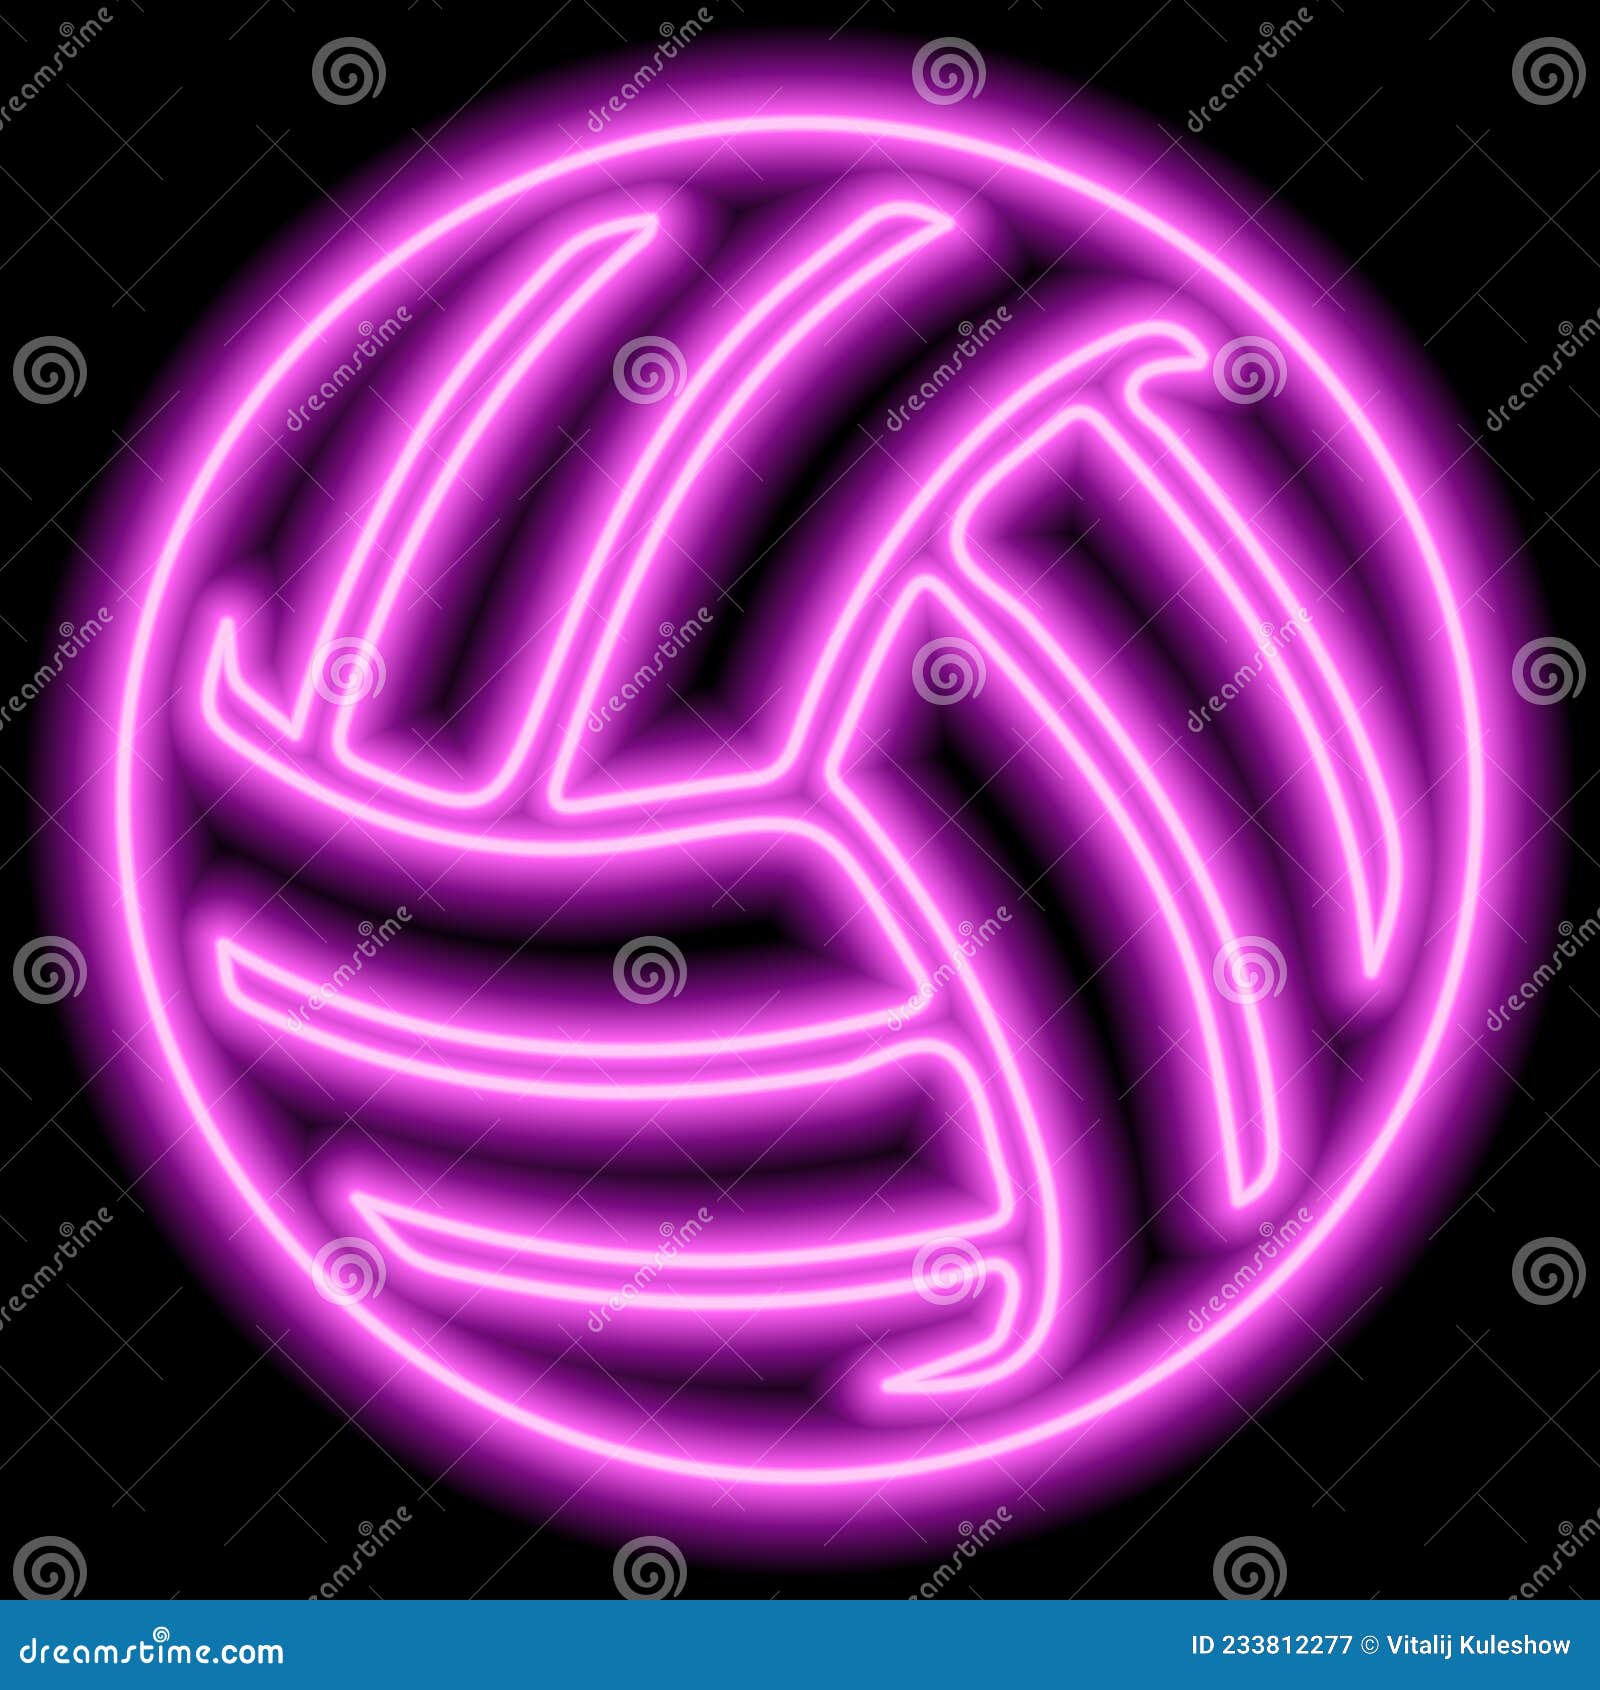 Nếu bạn yêu bóng chuyền và màu hồng, thì chắc chắn bạn sẽ thích ngay quả bóng chuyền neon màu hồng sặc sỡ này trên nền đen đầy lôi cuốn.